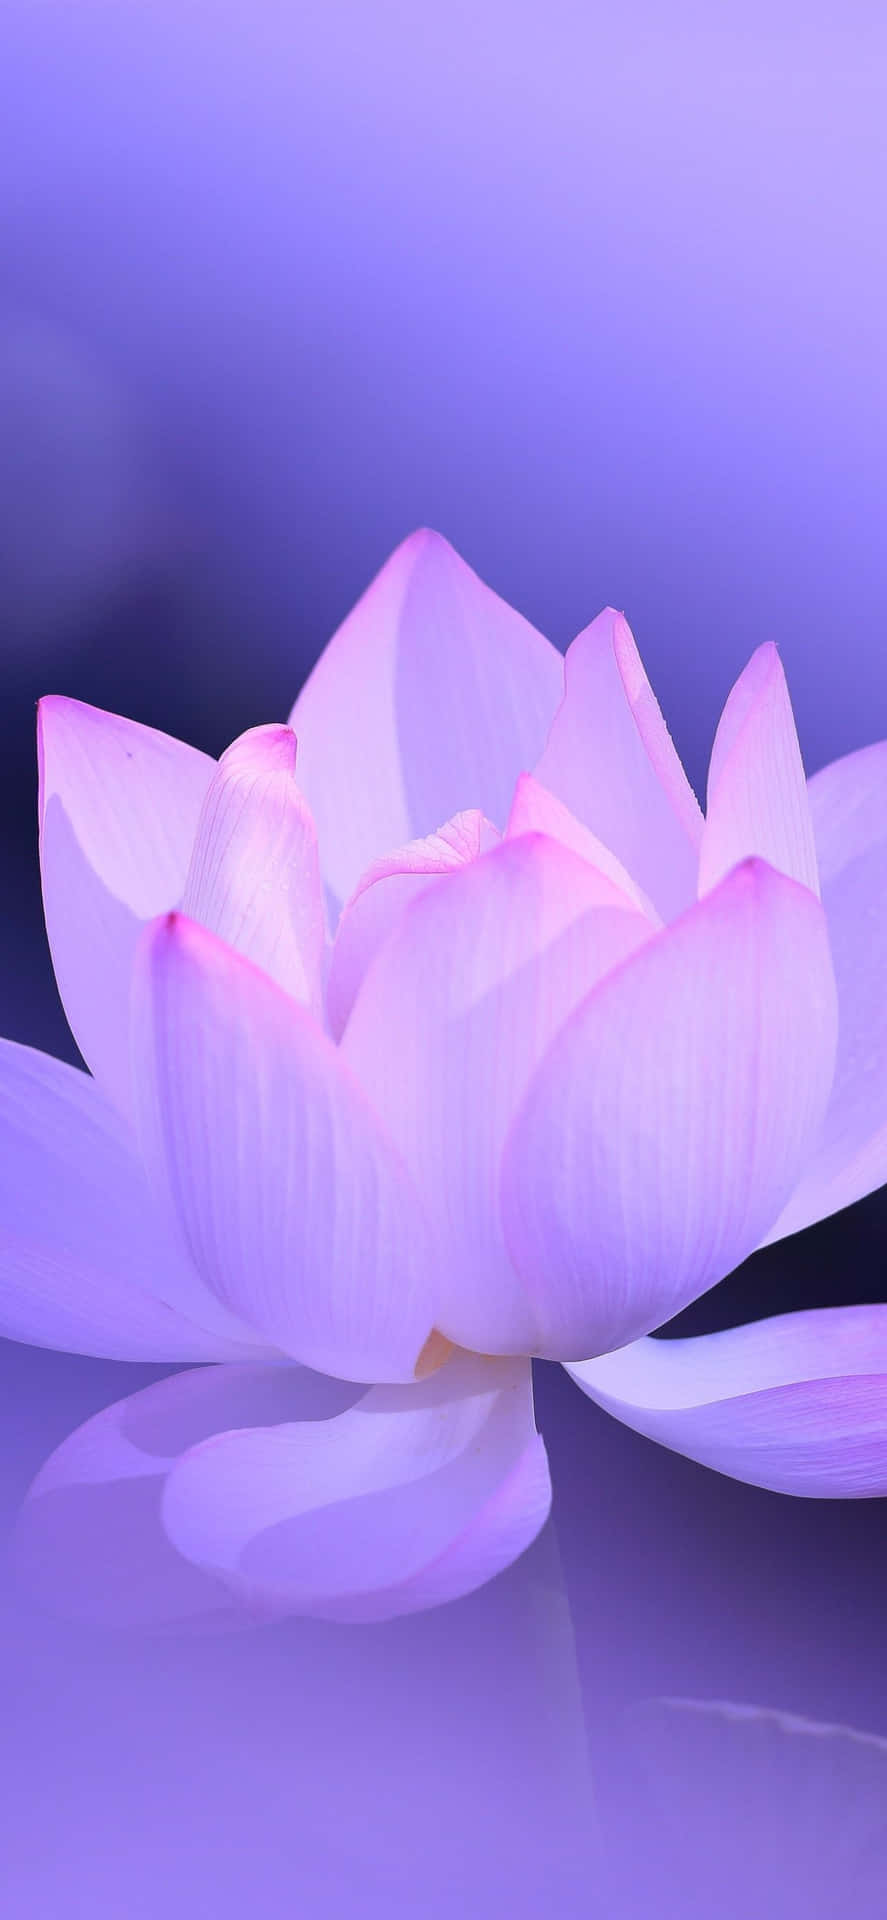 Beundrendeskønheden I En Zen Lyserød Lotusblomst.